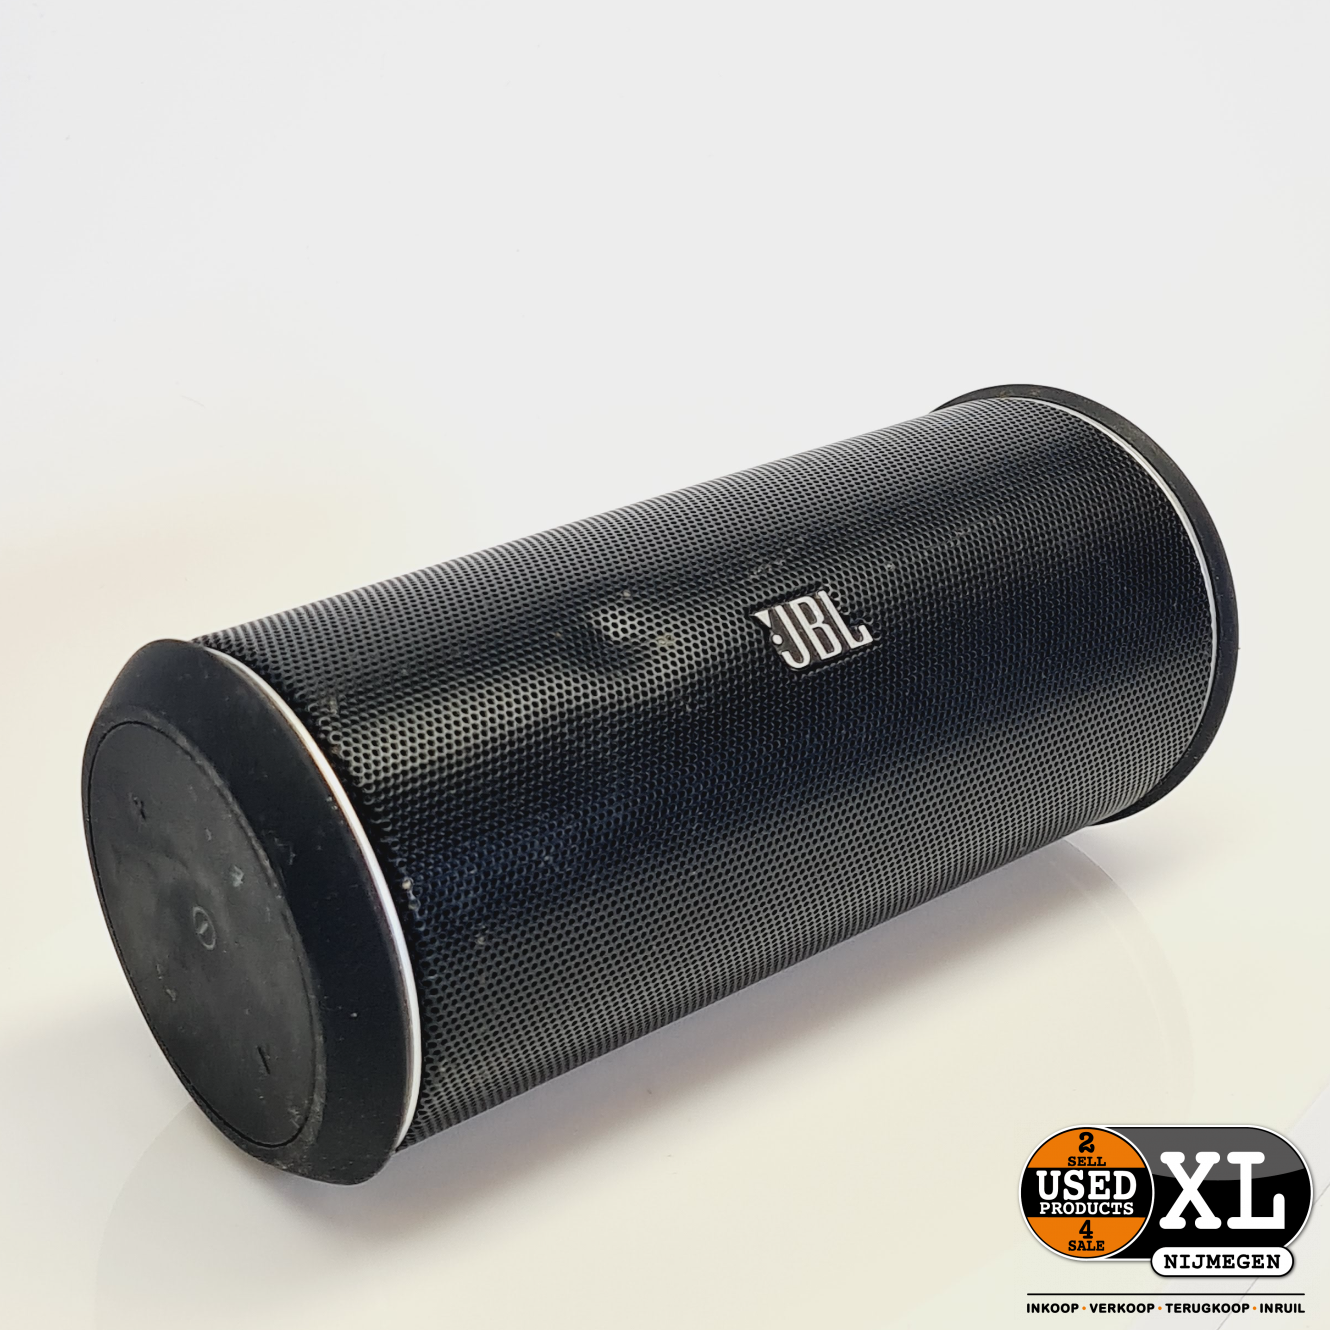 solidariteit Bewusteloos Geschatte JBL Flip 2 Bluetooth Speaker Zwart | met Garantie - Used Products Nijmegen  XL